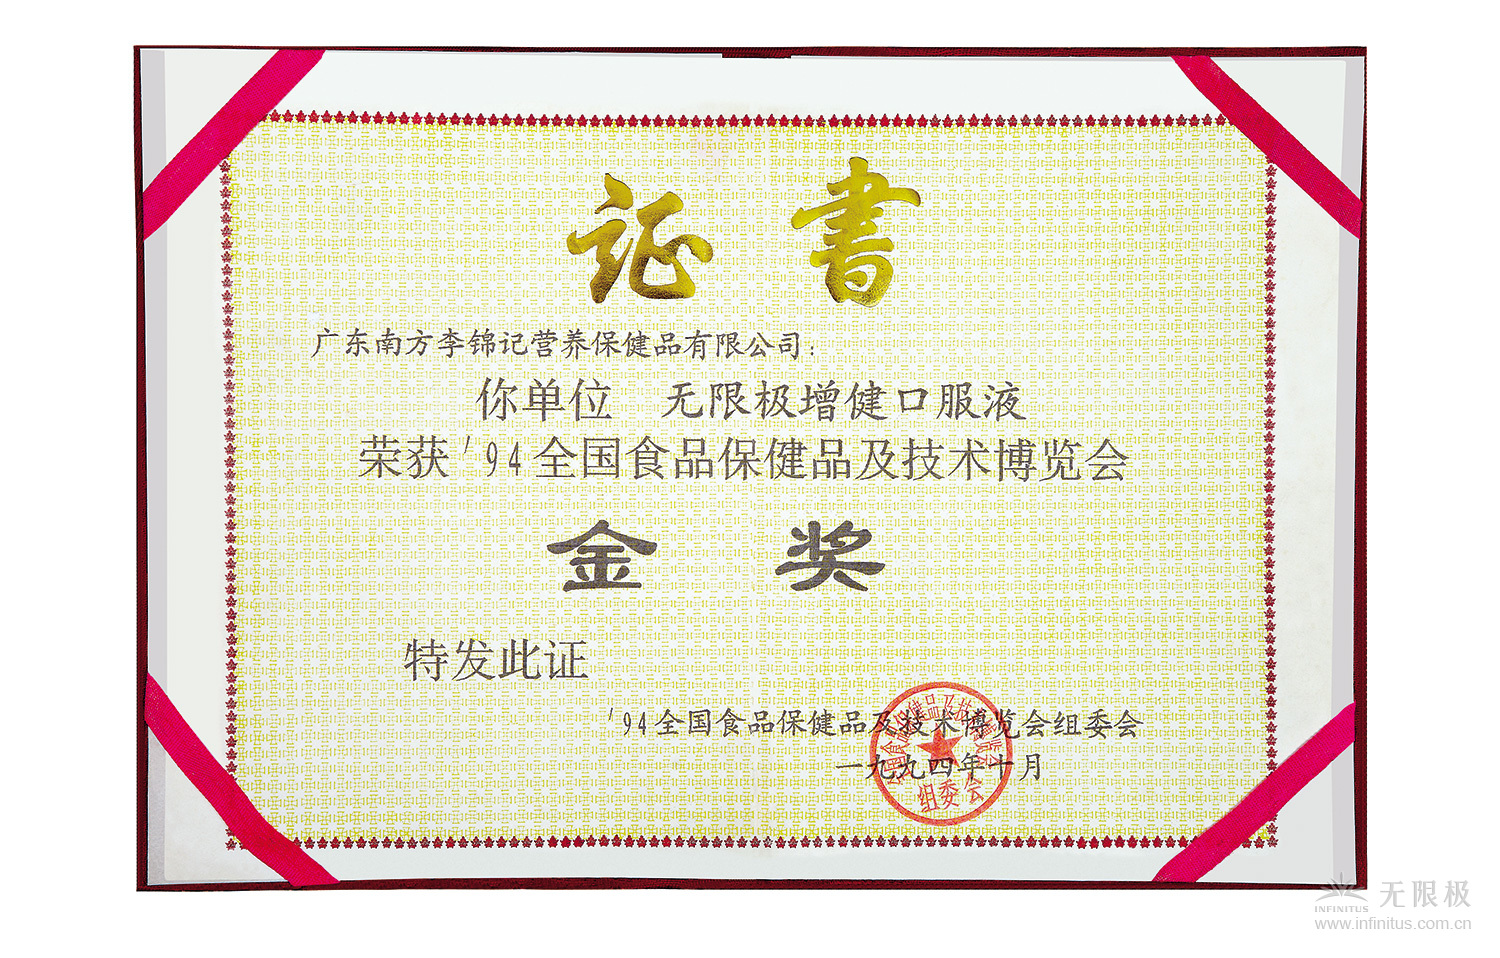 1994年10月，上市不久的真人斗牛【中国】有限公司,增健口服液就获得“94全国食品保健品及技术博览会”金奖。